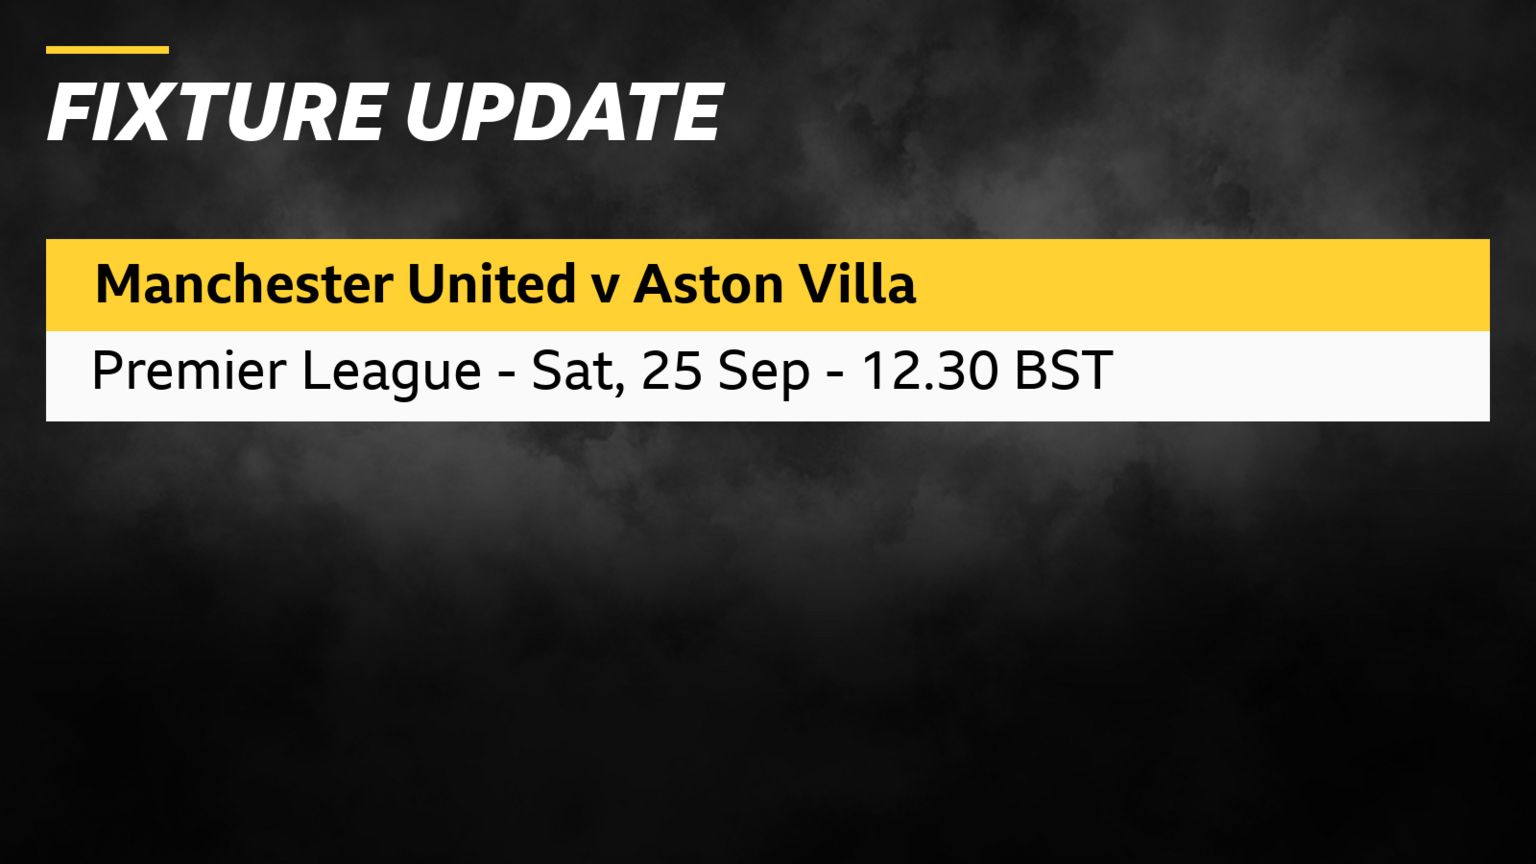 Man Utd v Aston Villa - Saturday 25 September - 12.30 BST